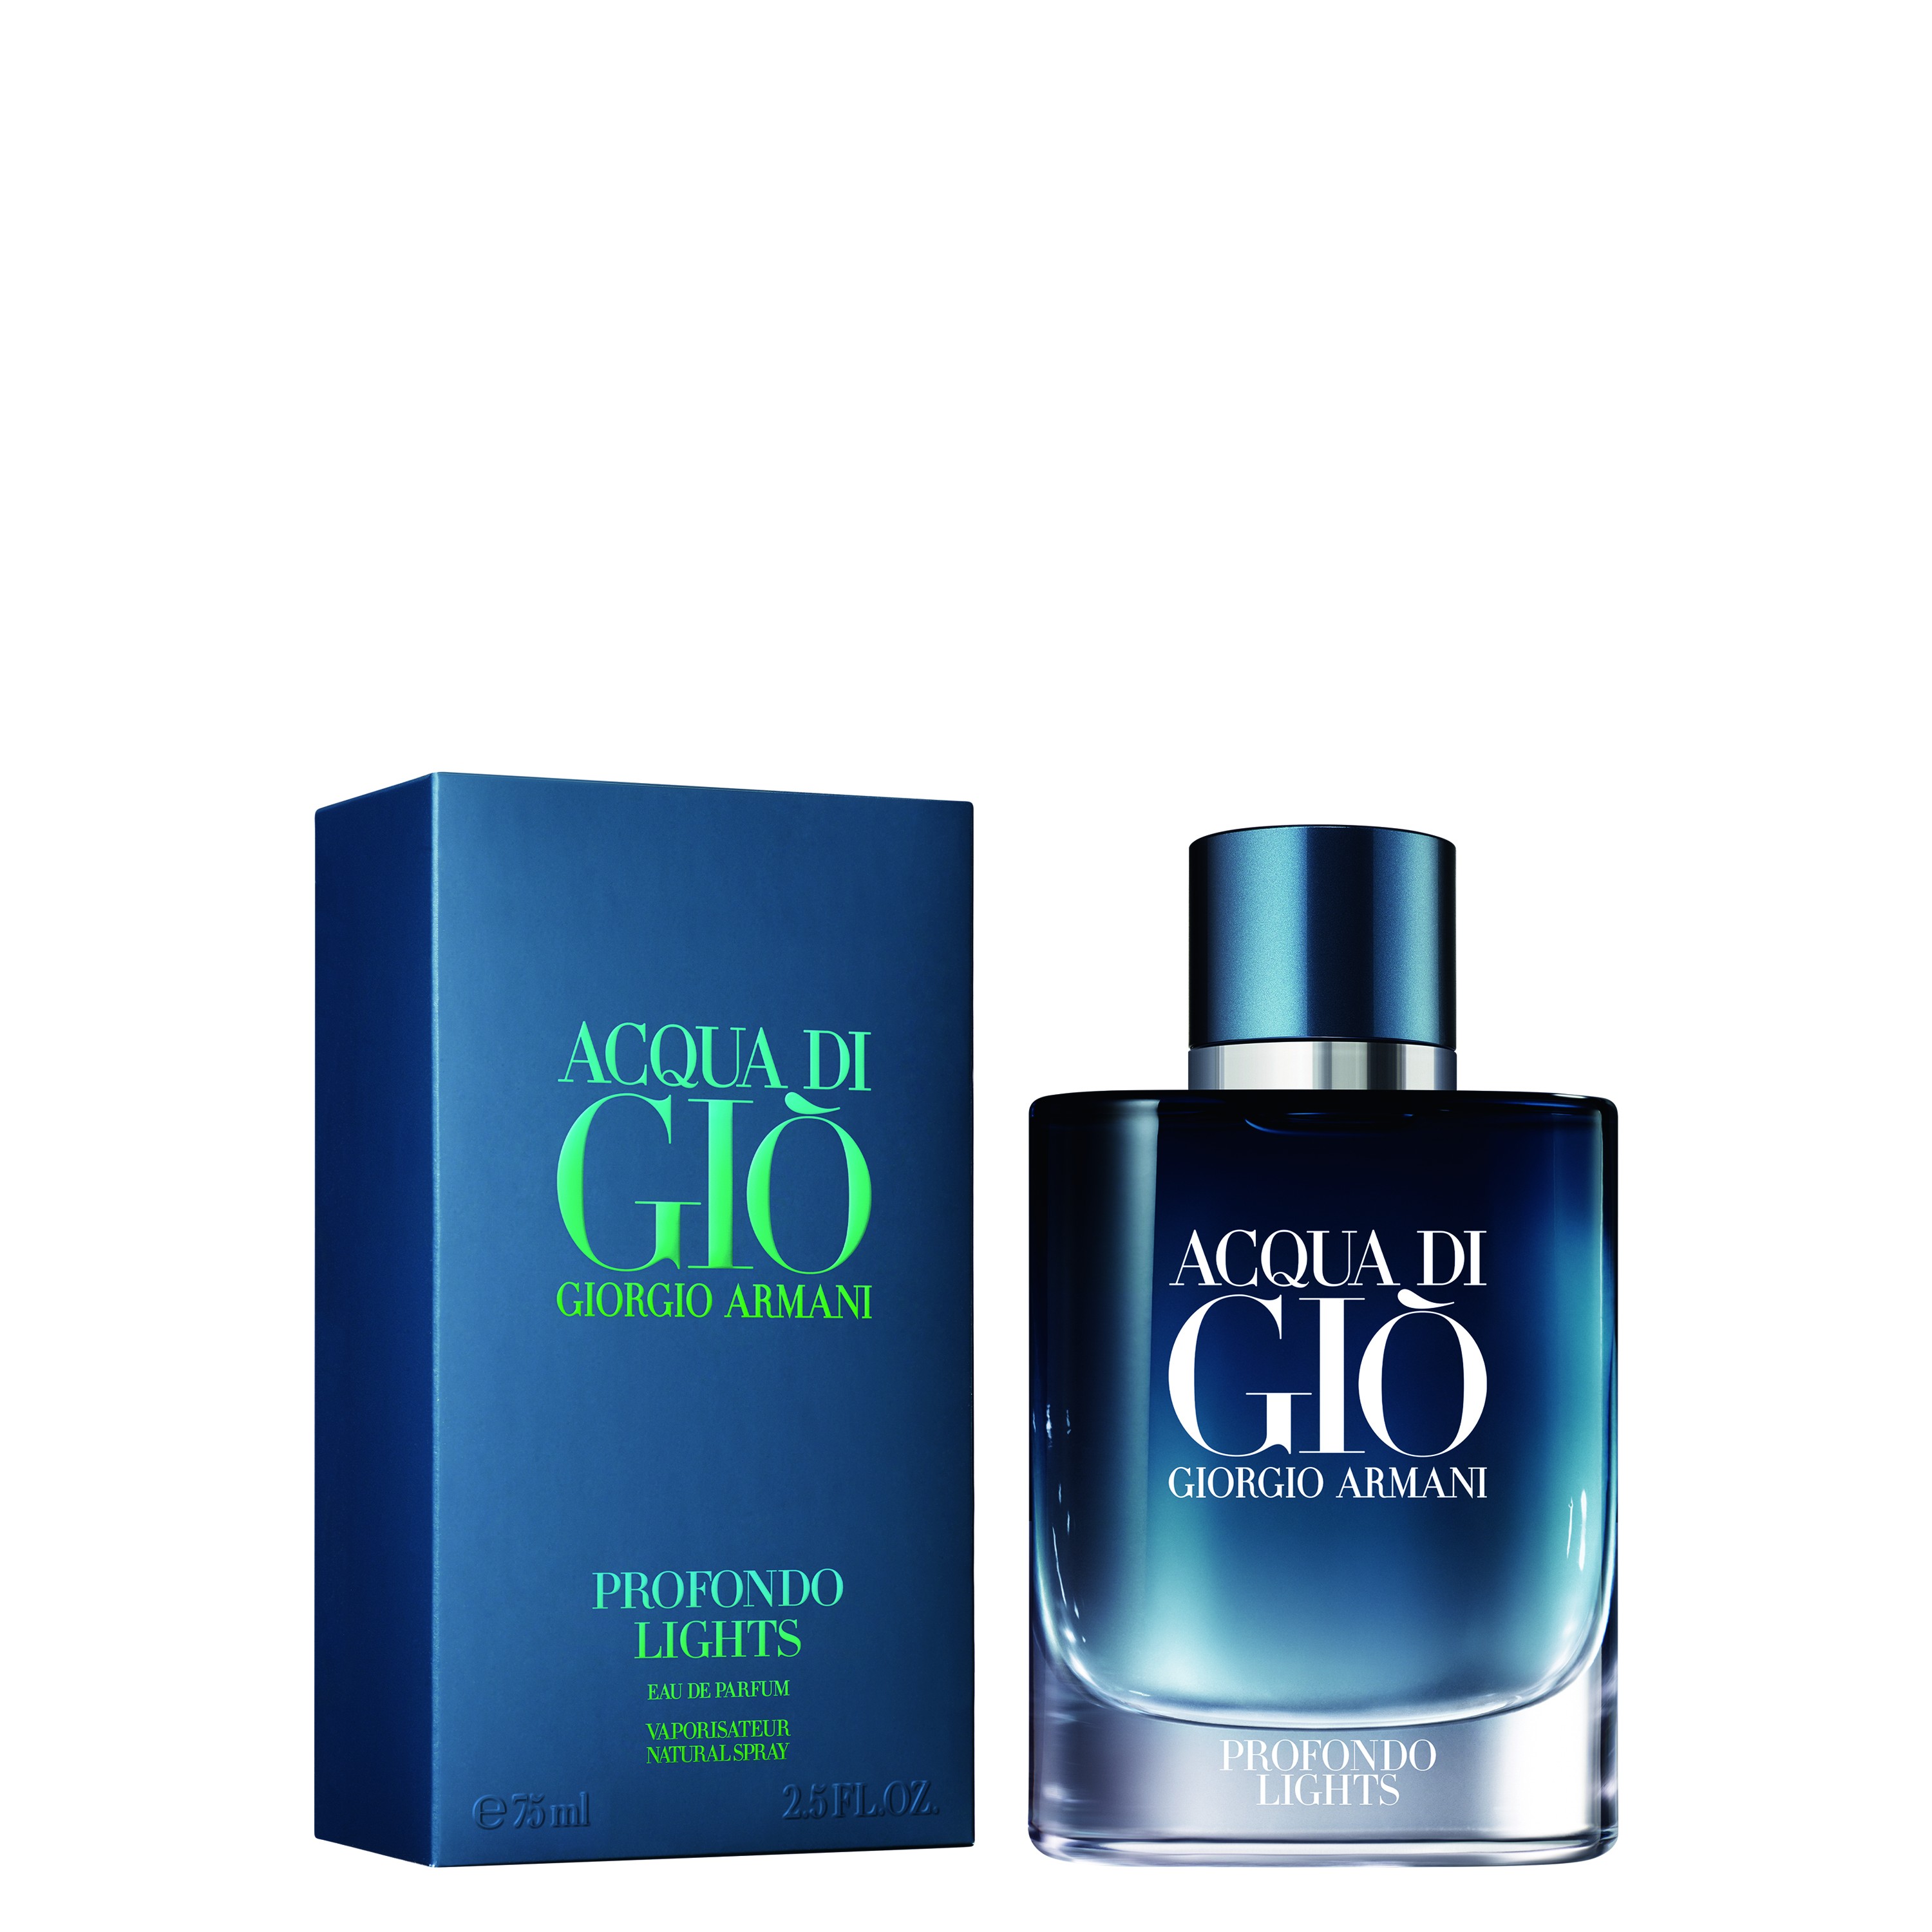 Acqua Di Giò Profondo Perfume Masculino 125ml, Giorgio Armani, (R$ 532)* (Foto: Arquivo Pessoal)